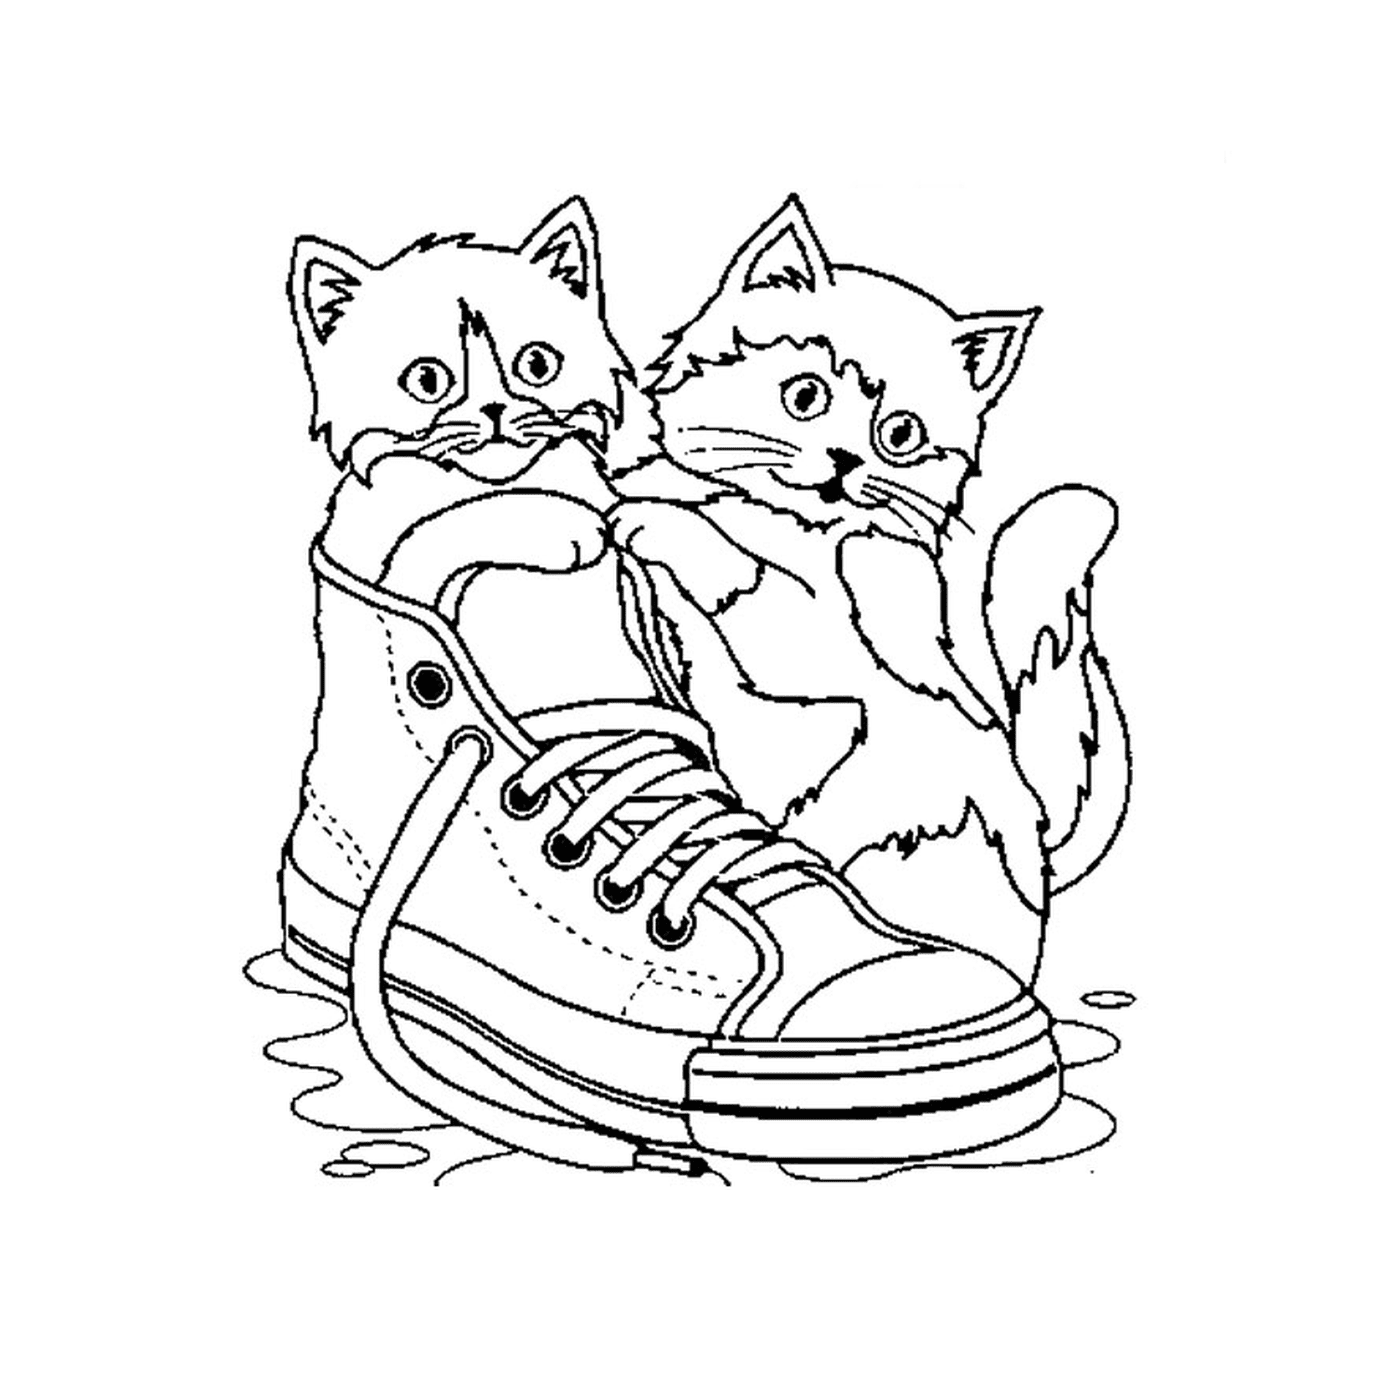  قطرتان تجلسان على حذاء في الماء 